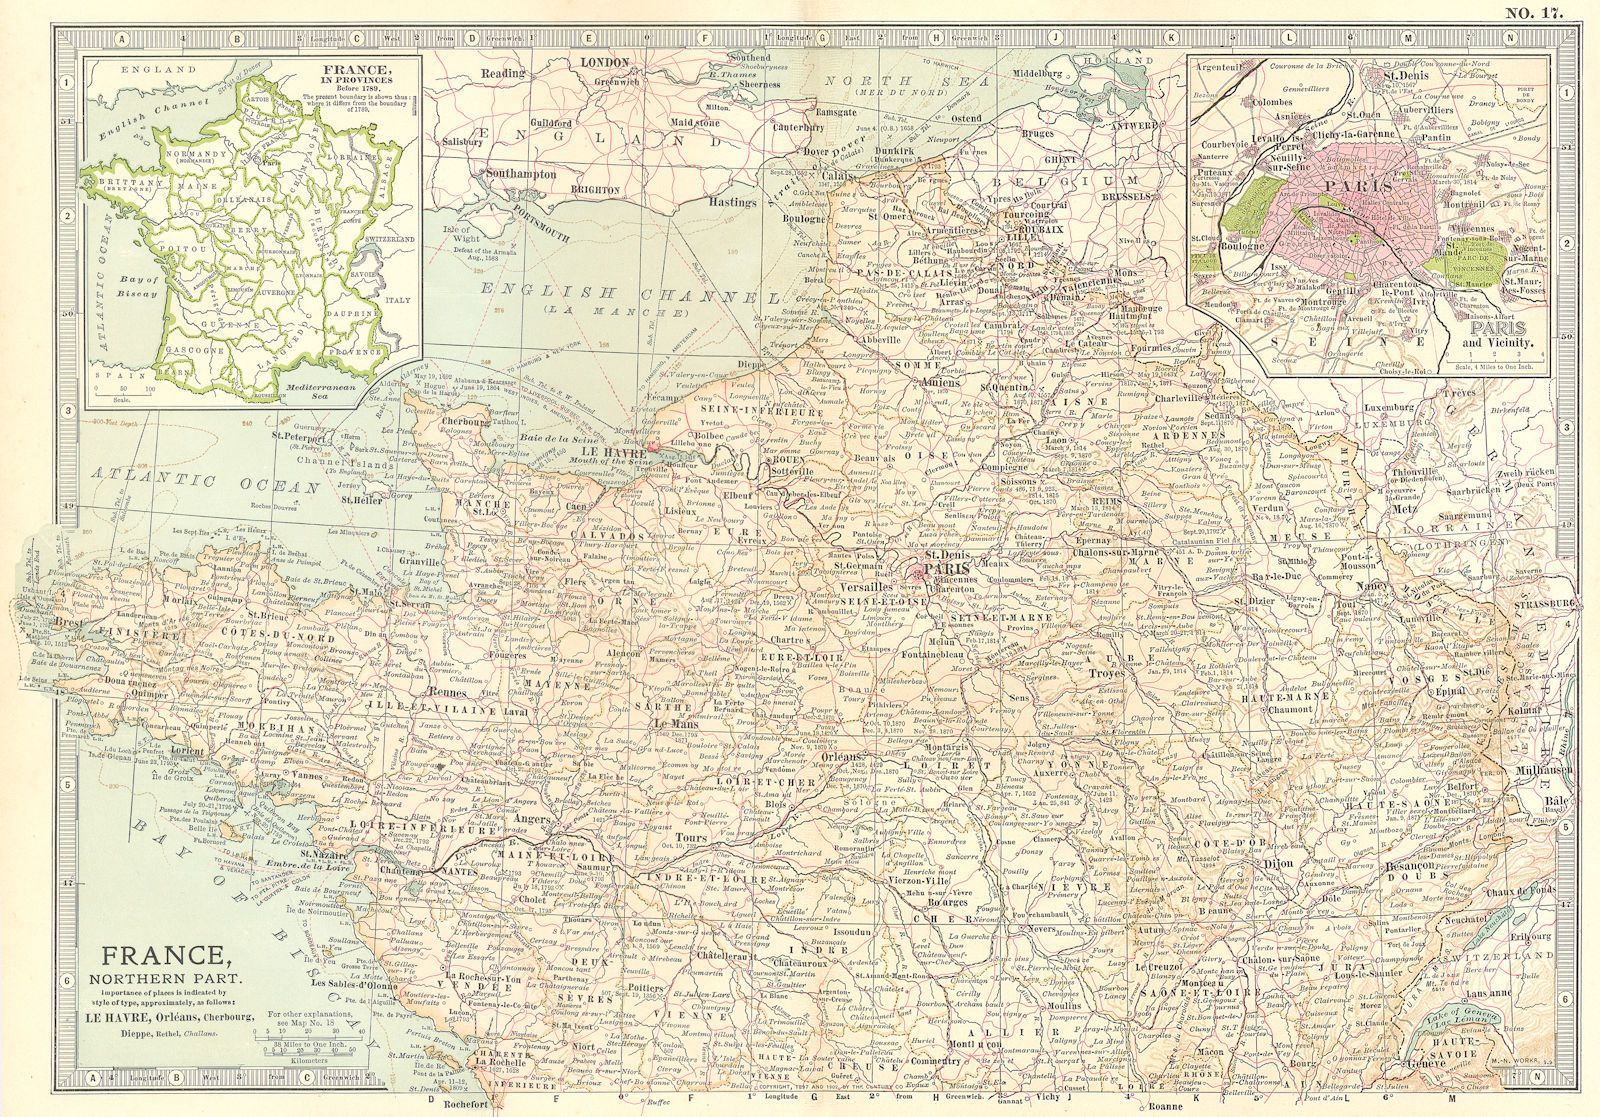 FRANCE NORTH. Provinces <1789. Paris. Shows key battlefields & dates 1903 map